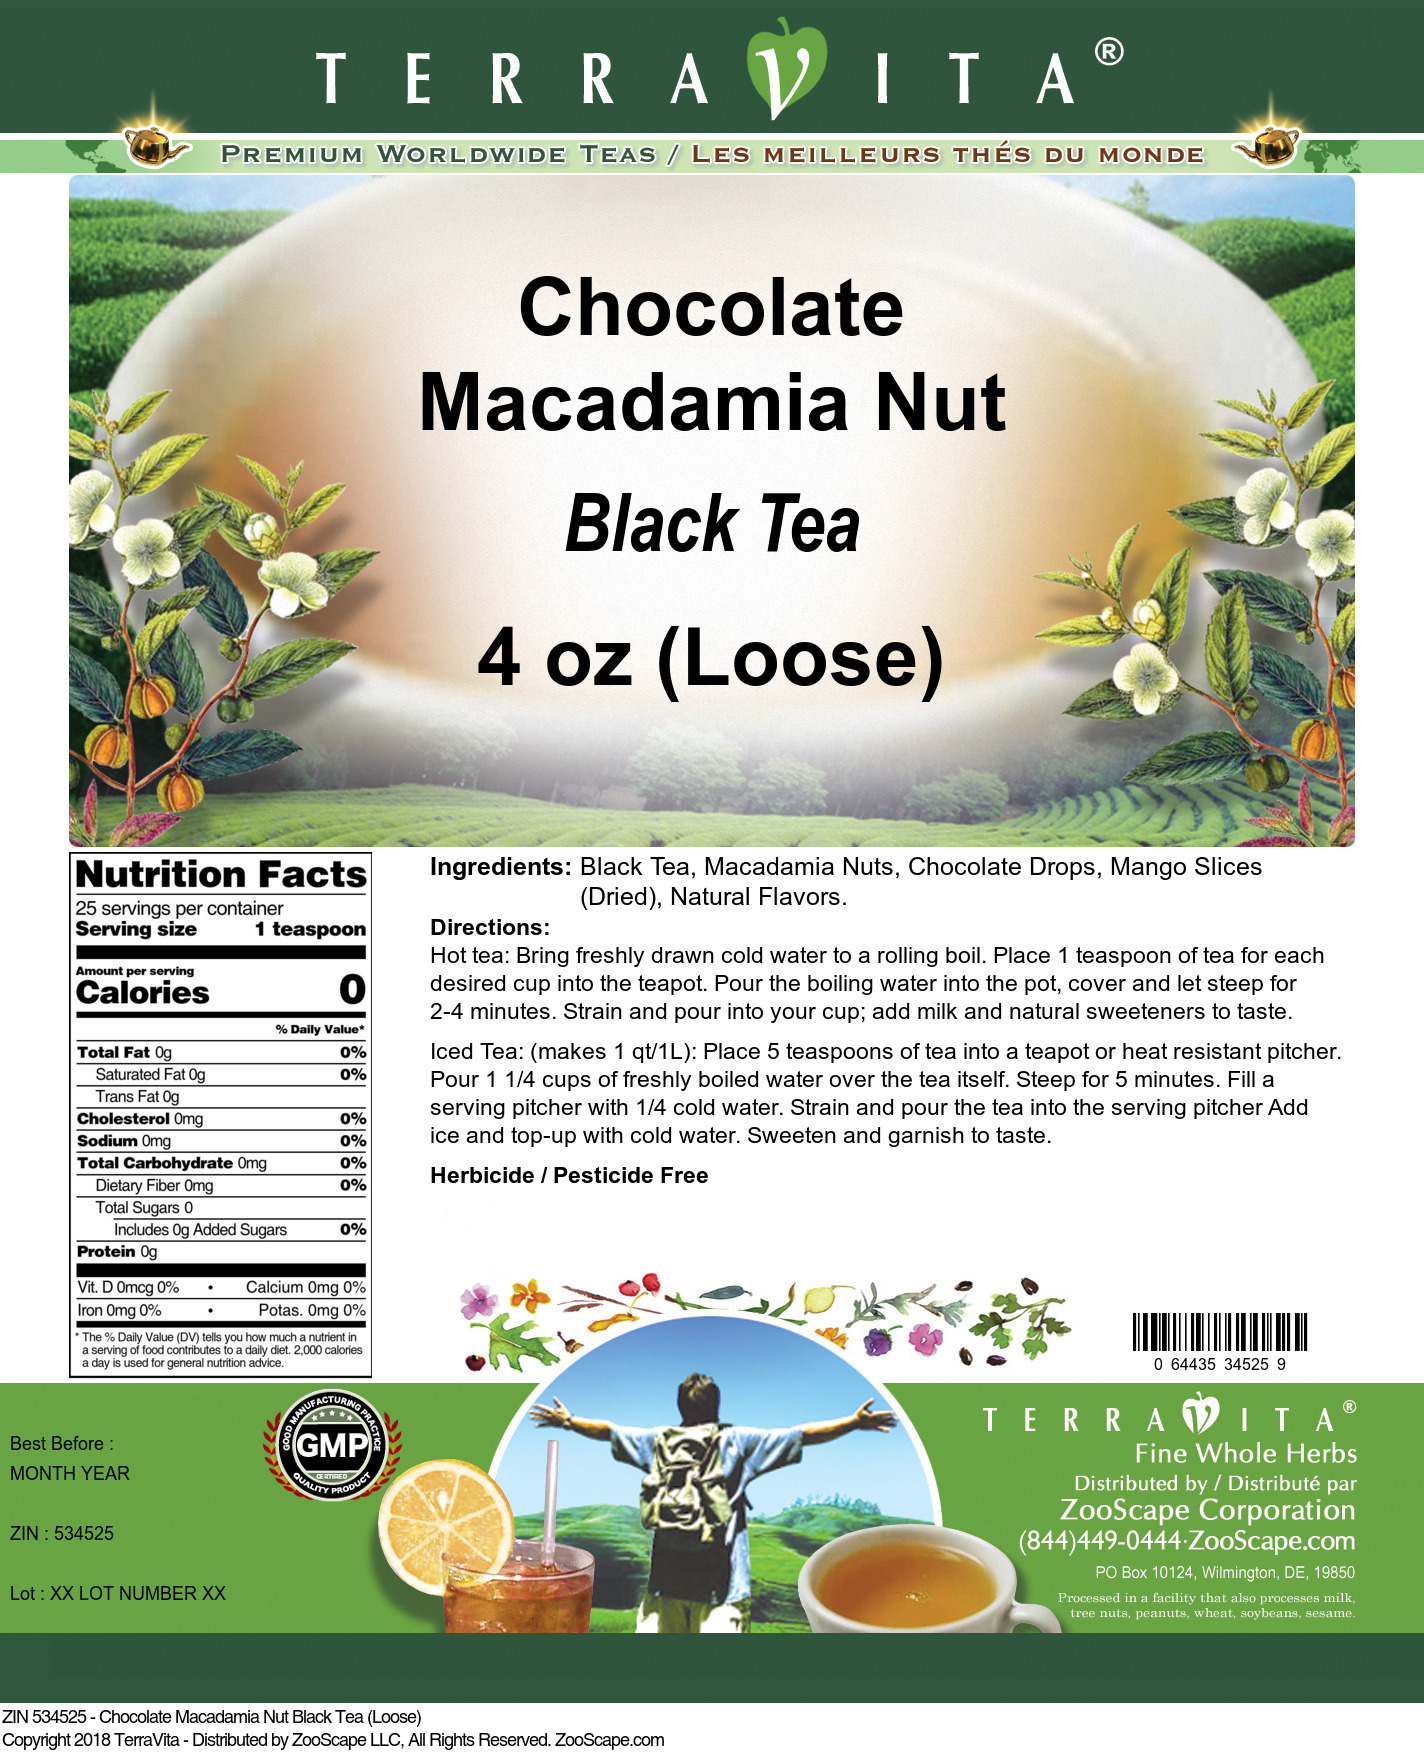 Chocolate Macadamia Nut Black Tea (Loose) - Label